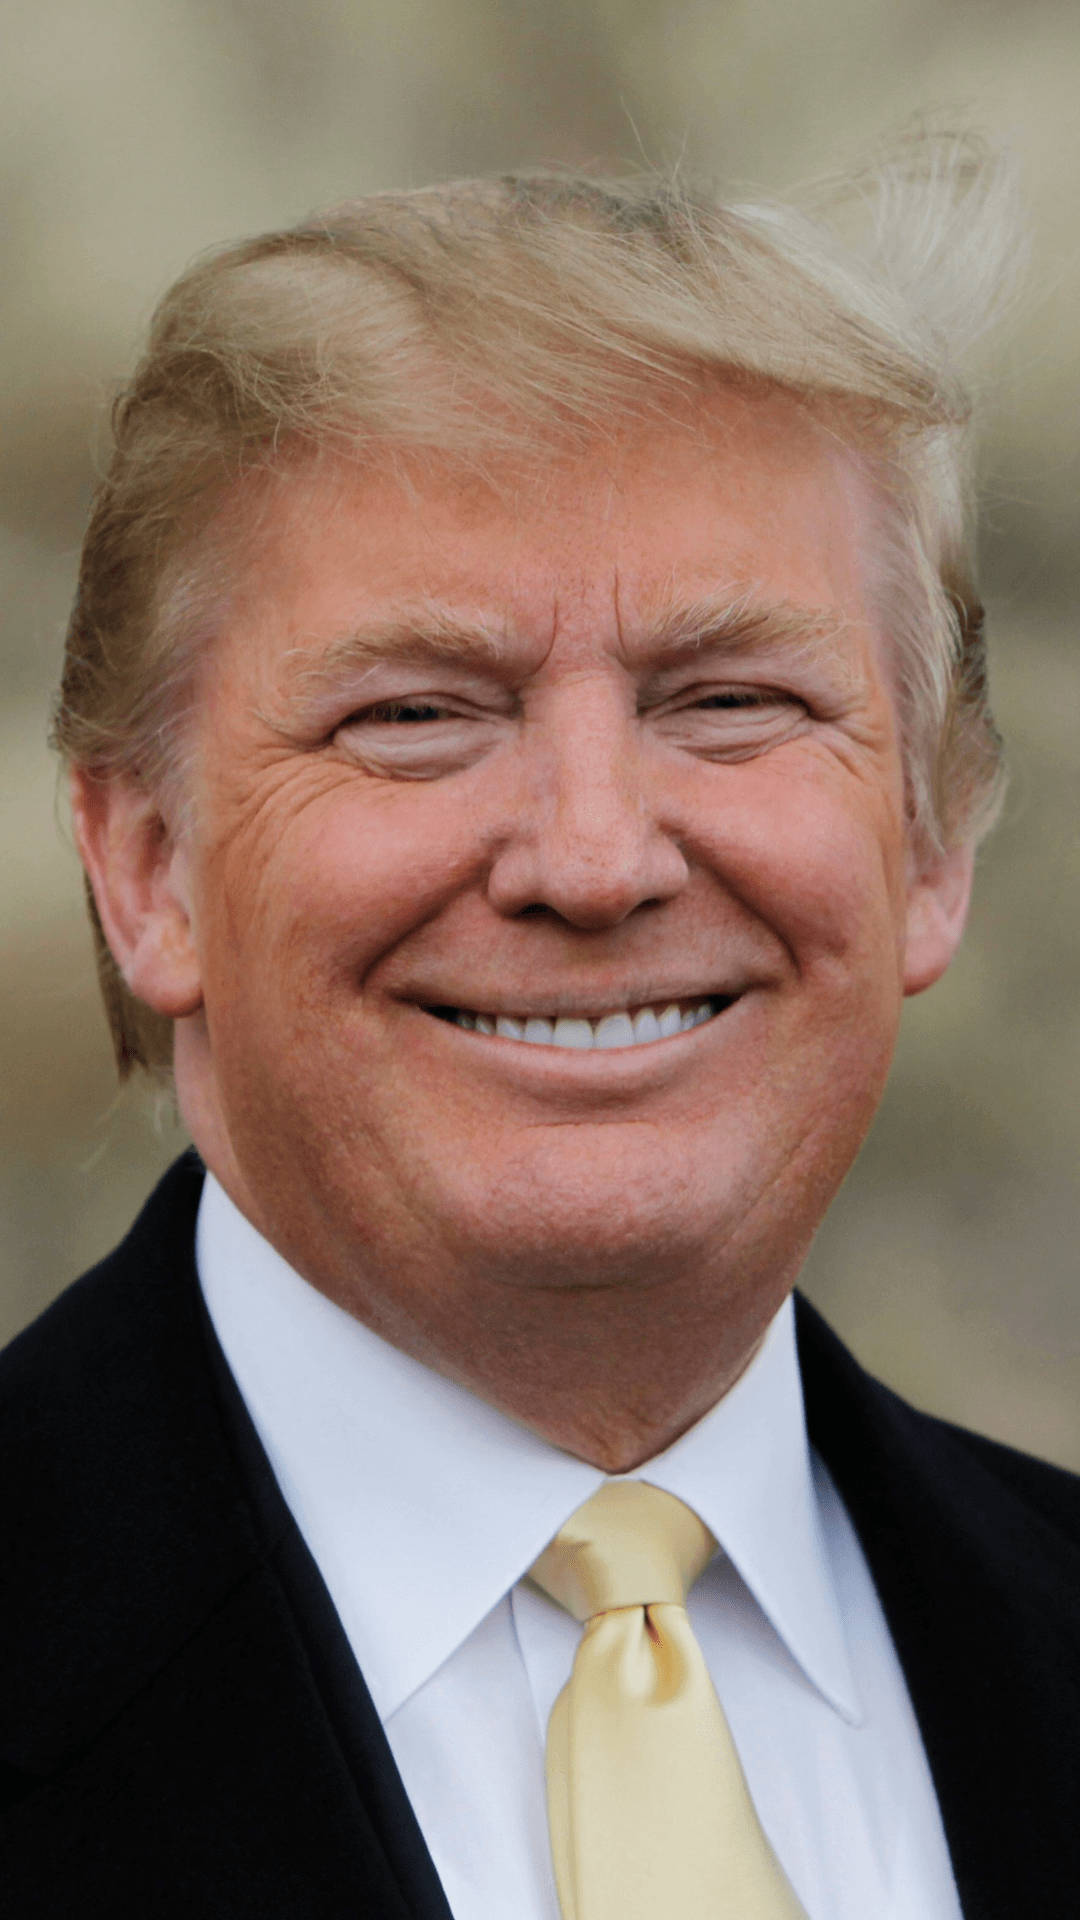 Donald Trump Con Un Sorriso A Trentadue Denti Sfondo